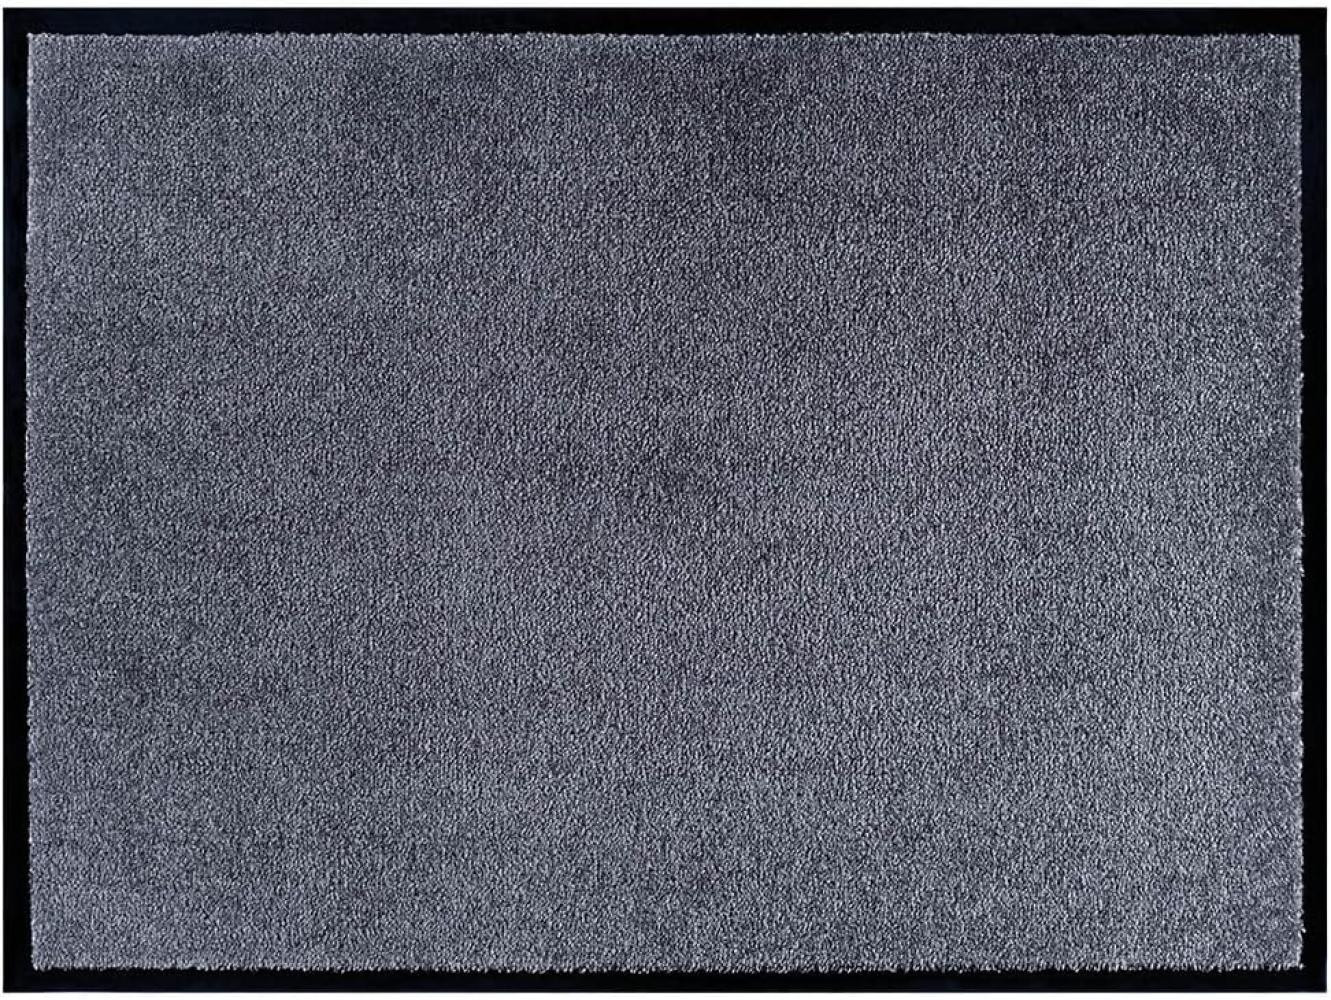 Teppich Boss waschbare In- & Outdoor Fußmatte Uni einfarbig - grau - 80x120x0,7cm Bild 1